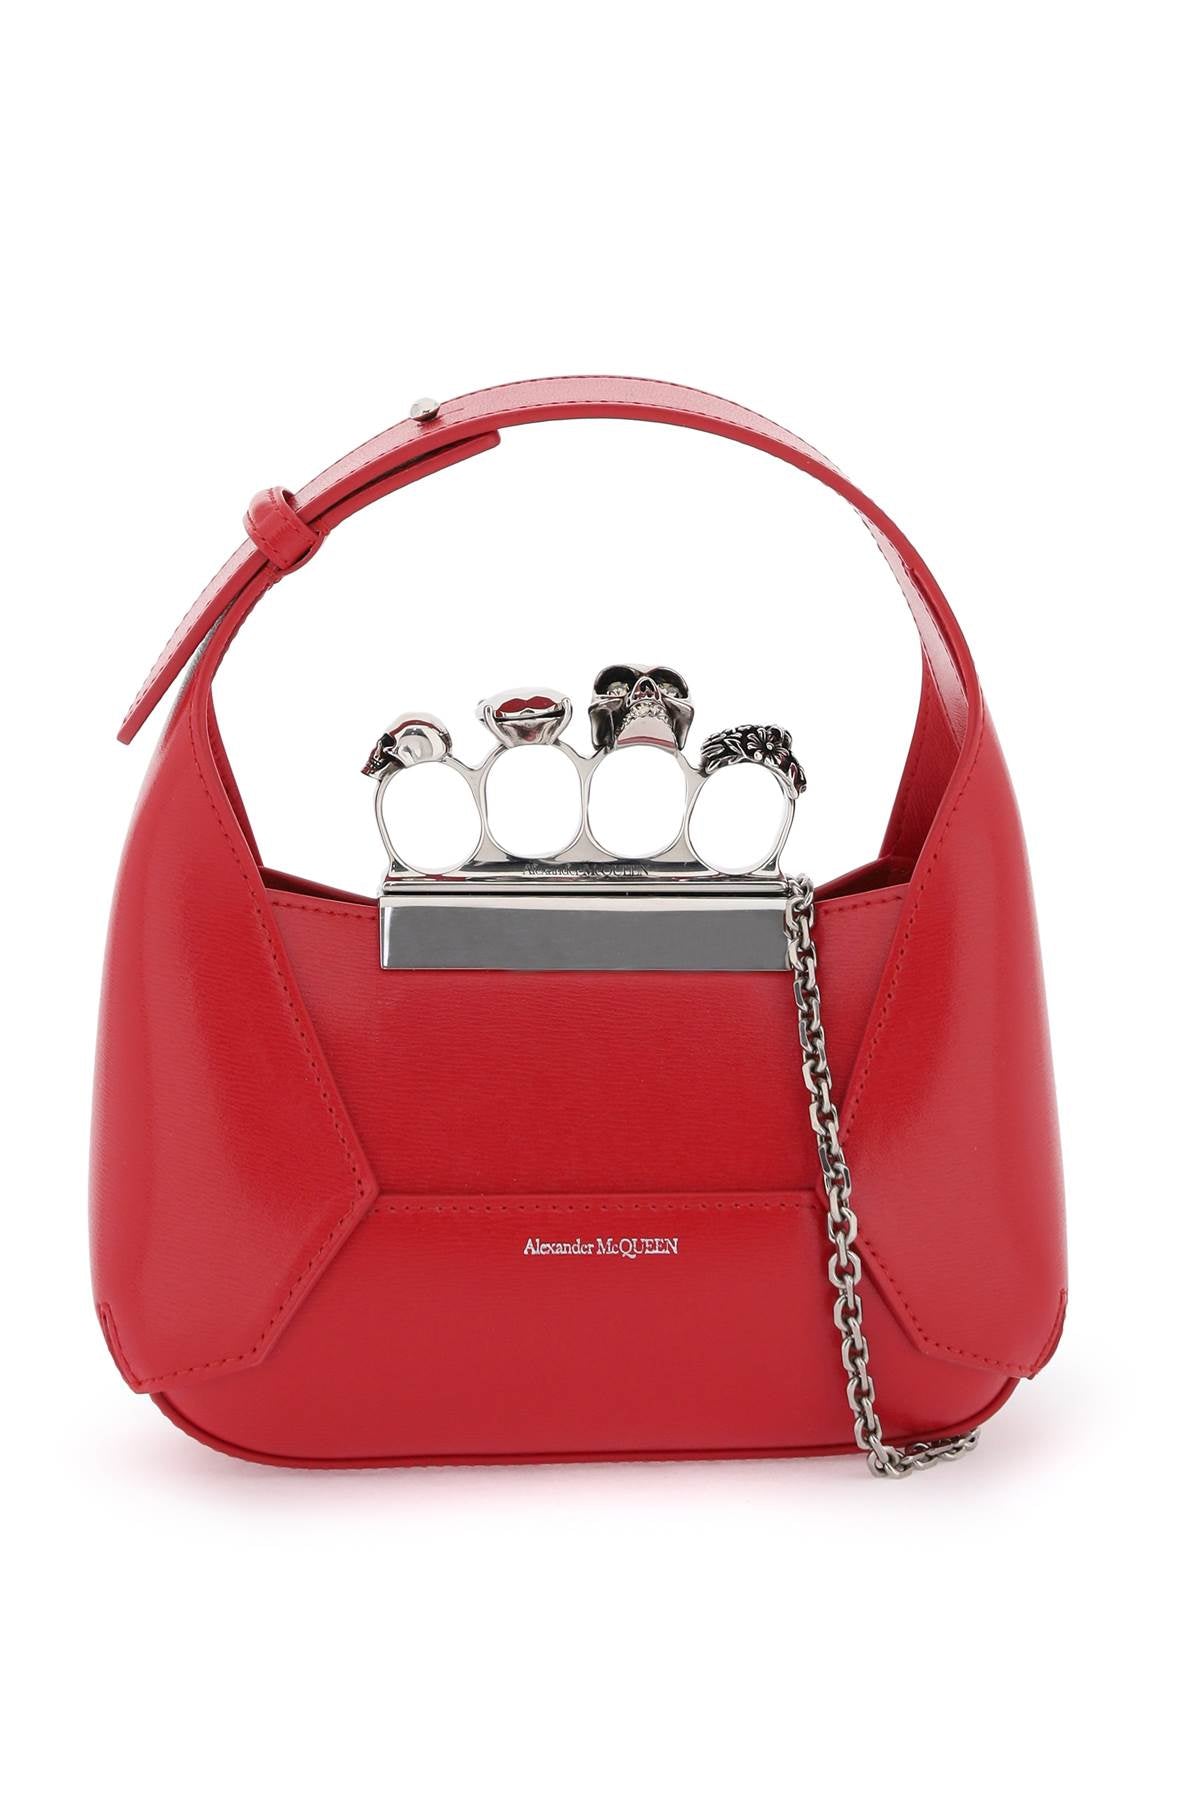 Túi xách da nữ màu đỏ phong cách hiện đại, sử dụng vòng Swarovski - Hãng Alexander McQueen